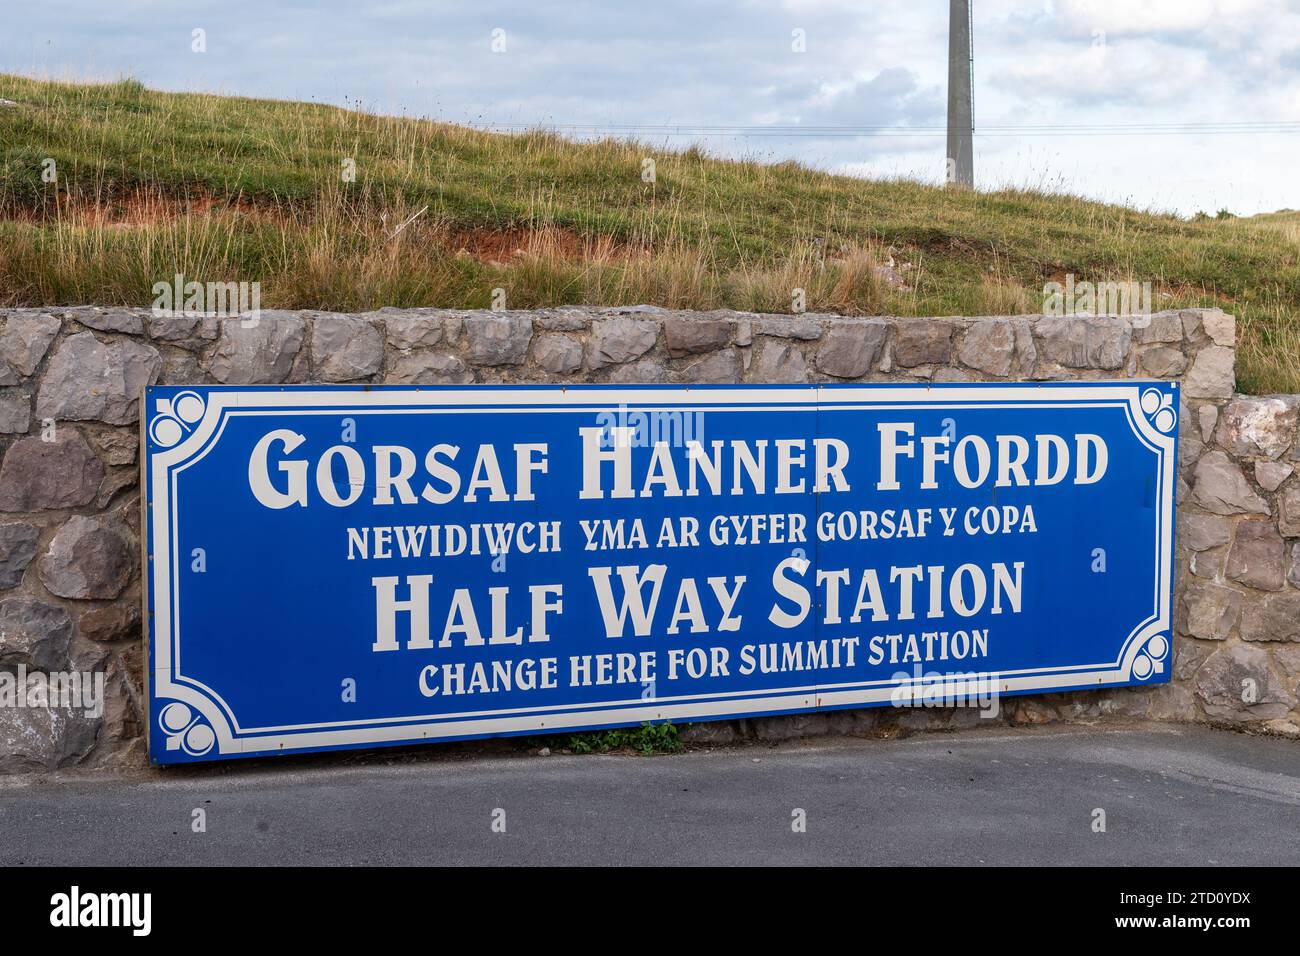 Schild für die Great Orme Tramway Halfway Station, Llandudno, North Wales, UK. Stockfoto